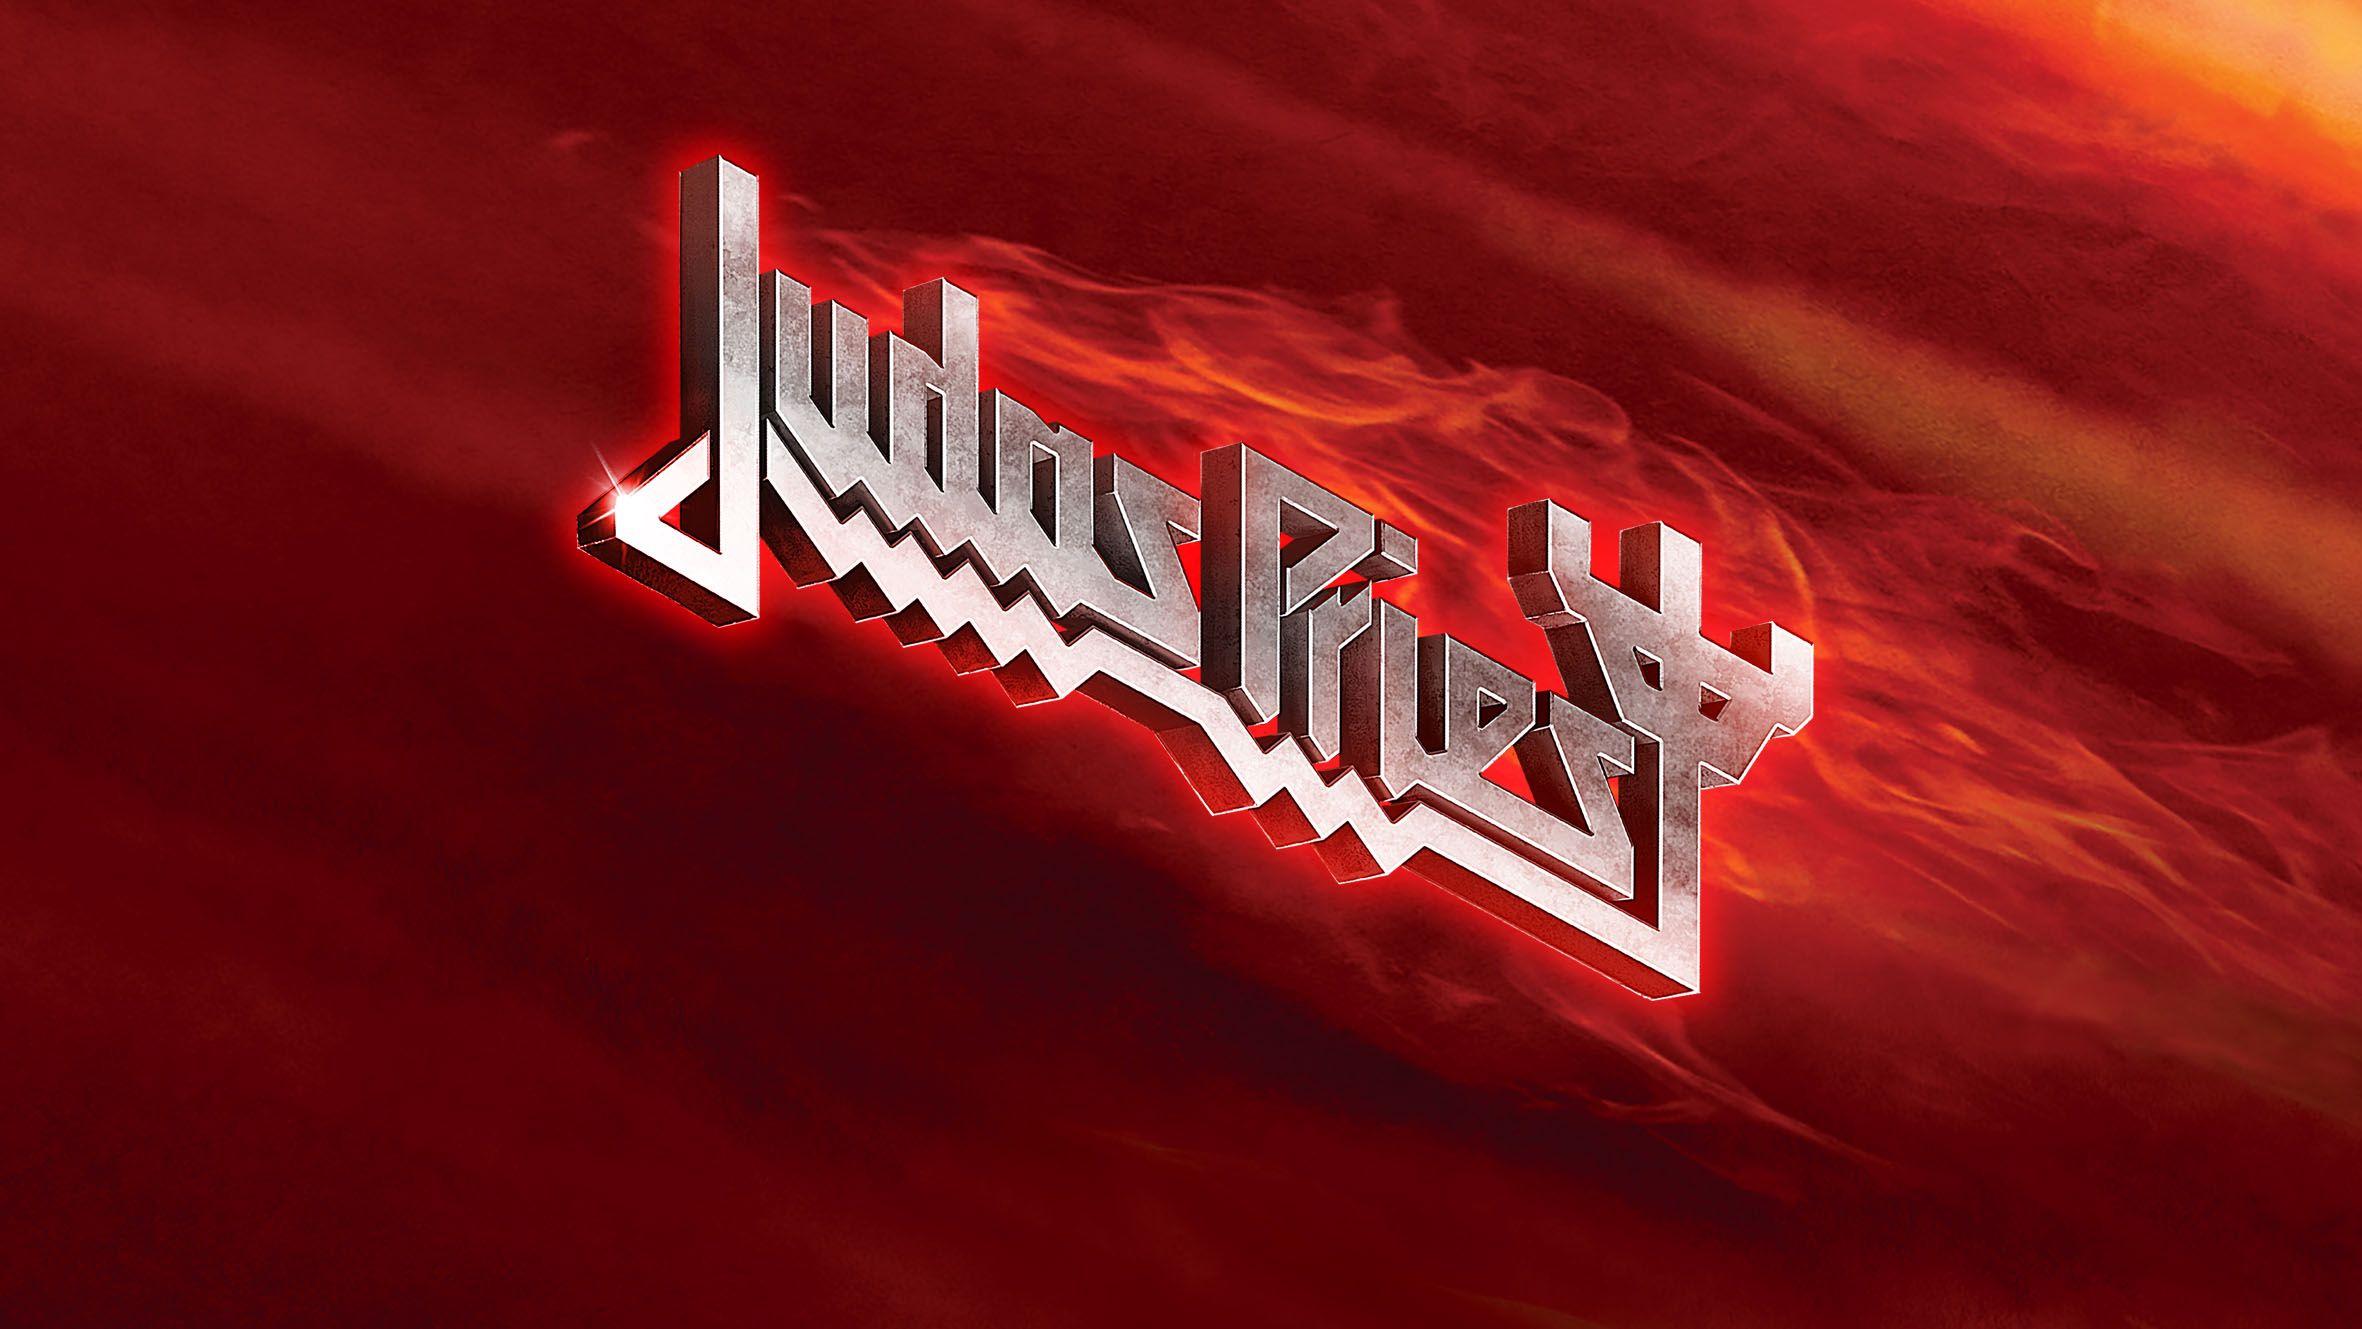 Judas Priest Original Logo - JudasPriest.com :: The Official Judas Priest Website